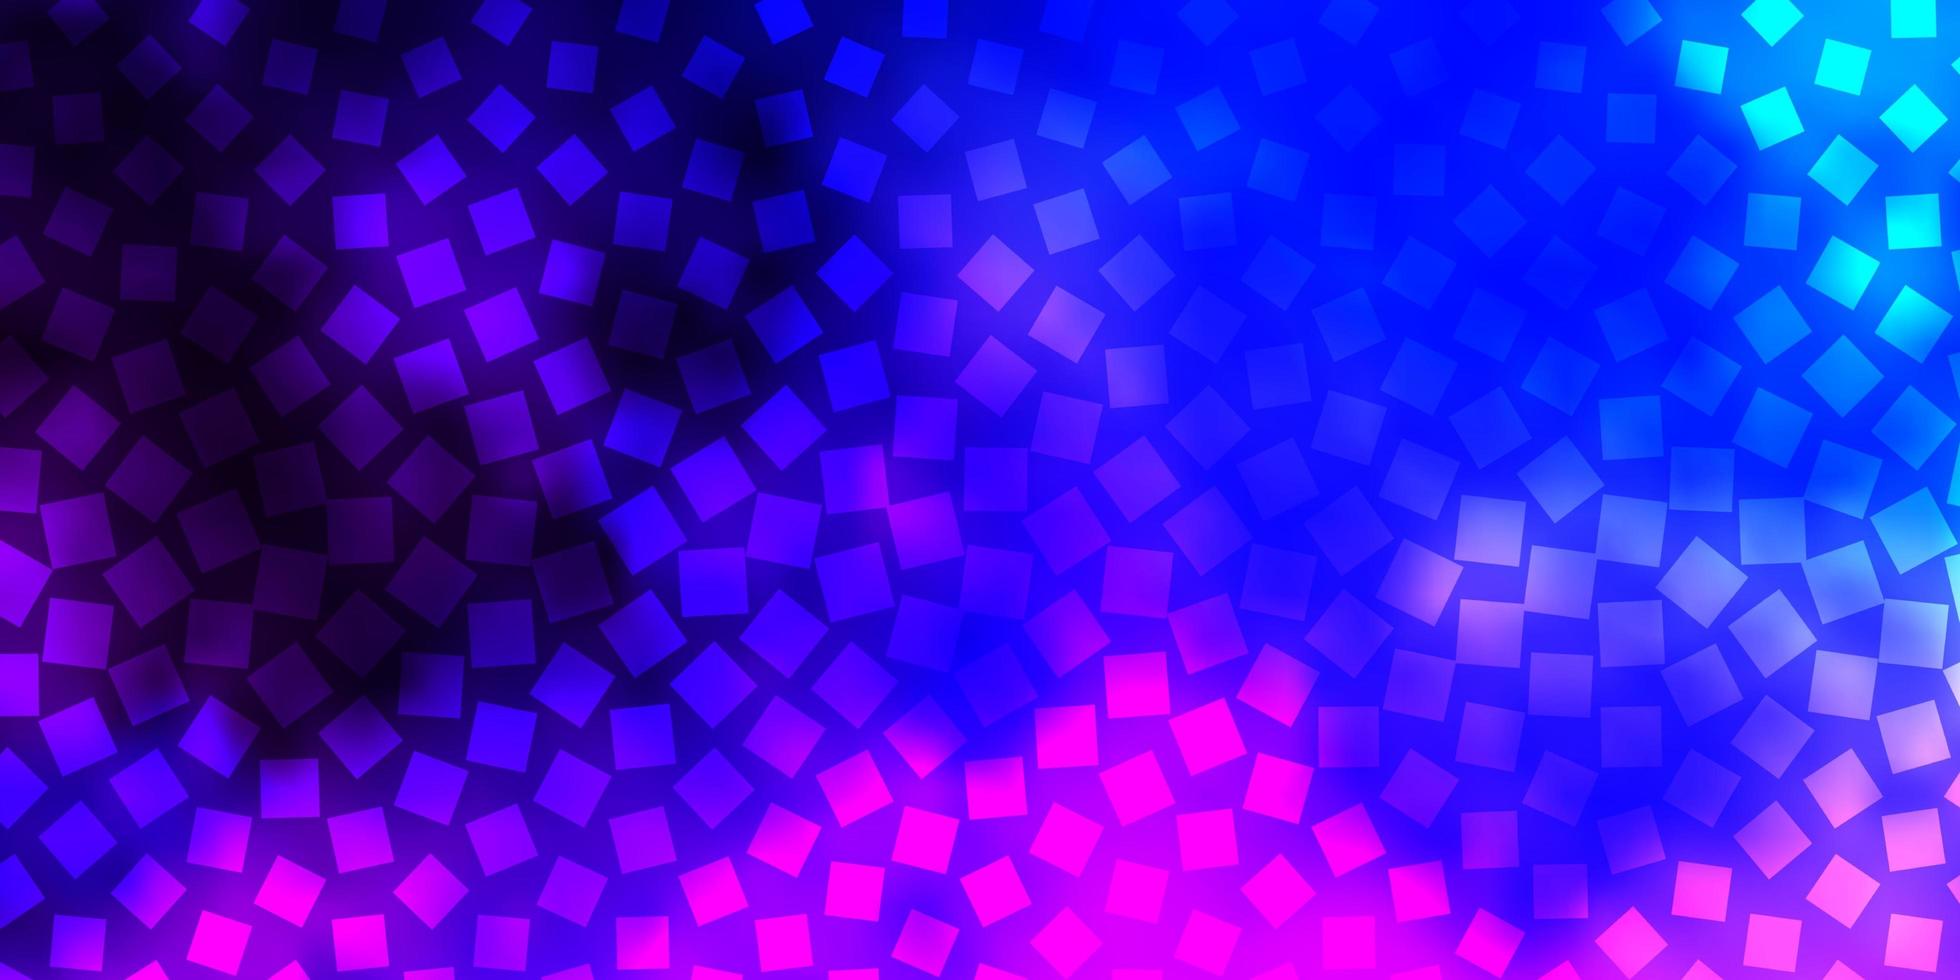 donkerroze, blauwe vector sjabloon met rechthoeken.